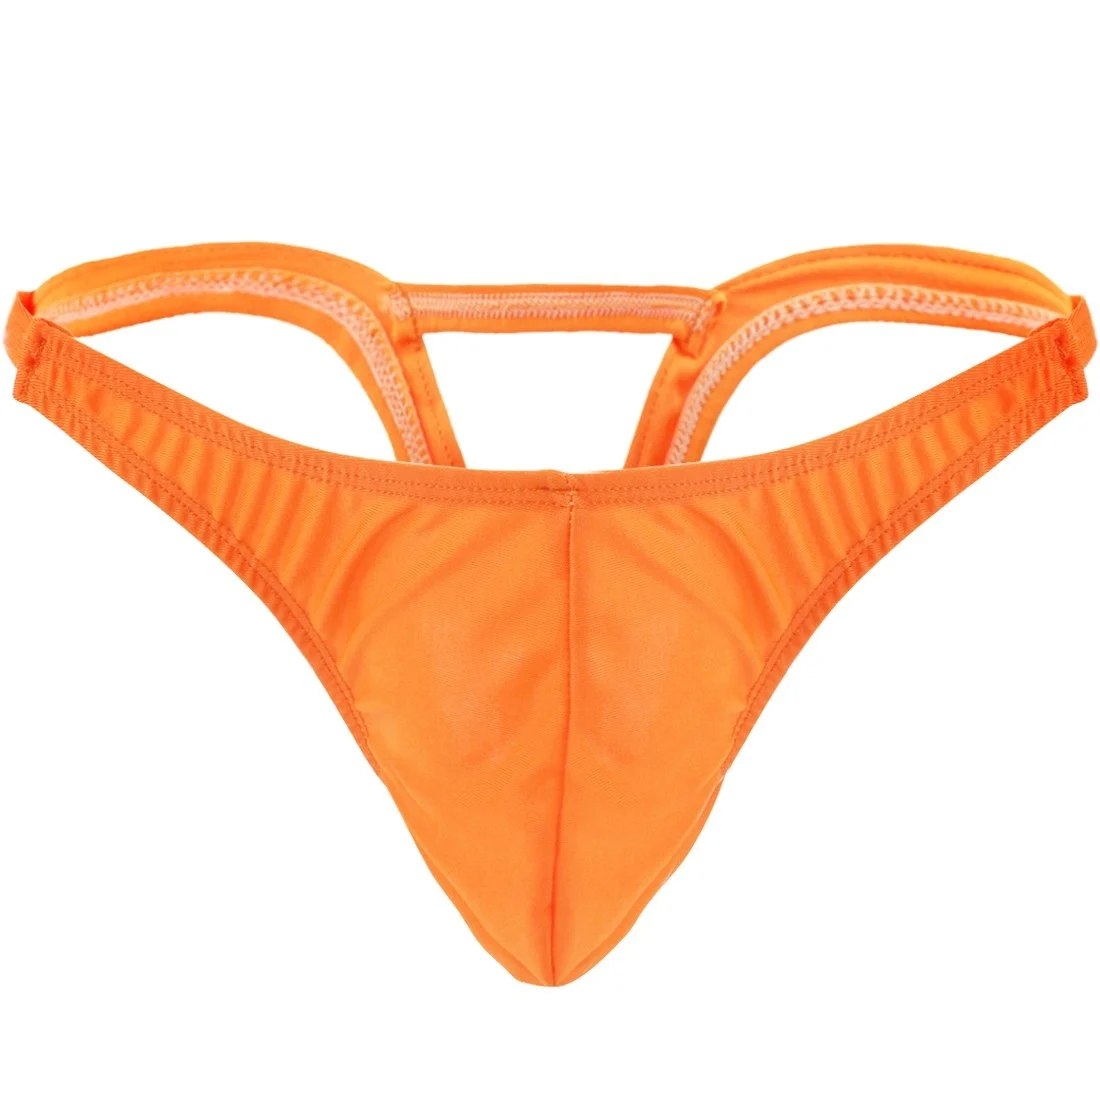 Мужская одежда для купания для геев, стринги, купальные плавки, шорты для геев, нижнее белье, мужские стринги, трусики с выпуклым мешочком с перевернутым задним купальным костюмом - Цвет: Orange